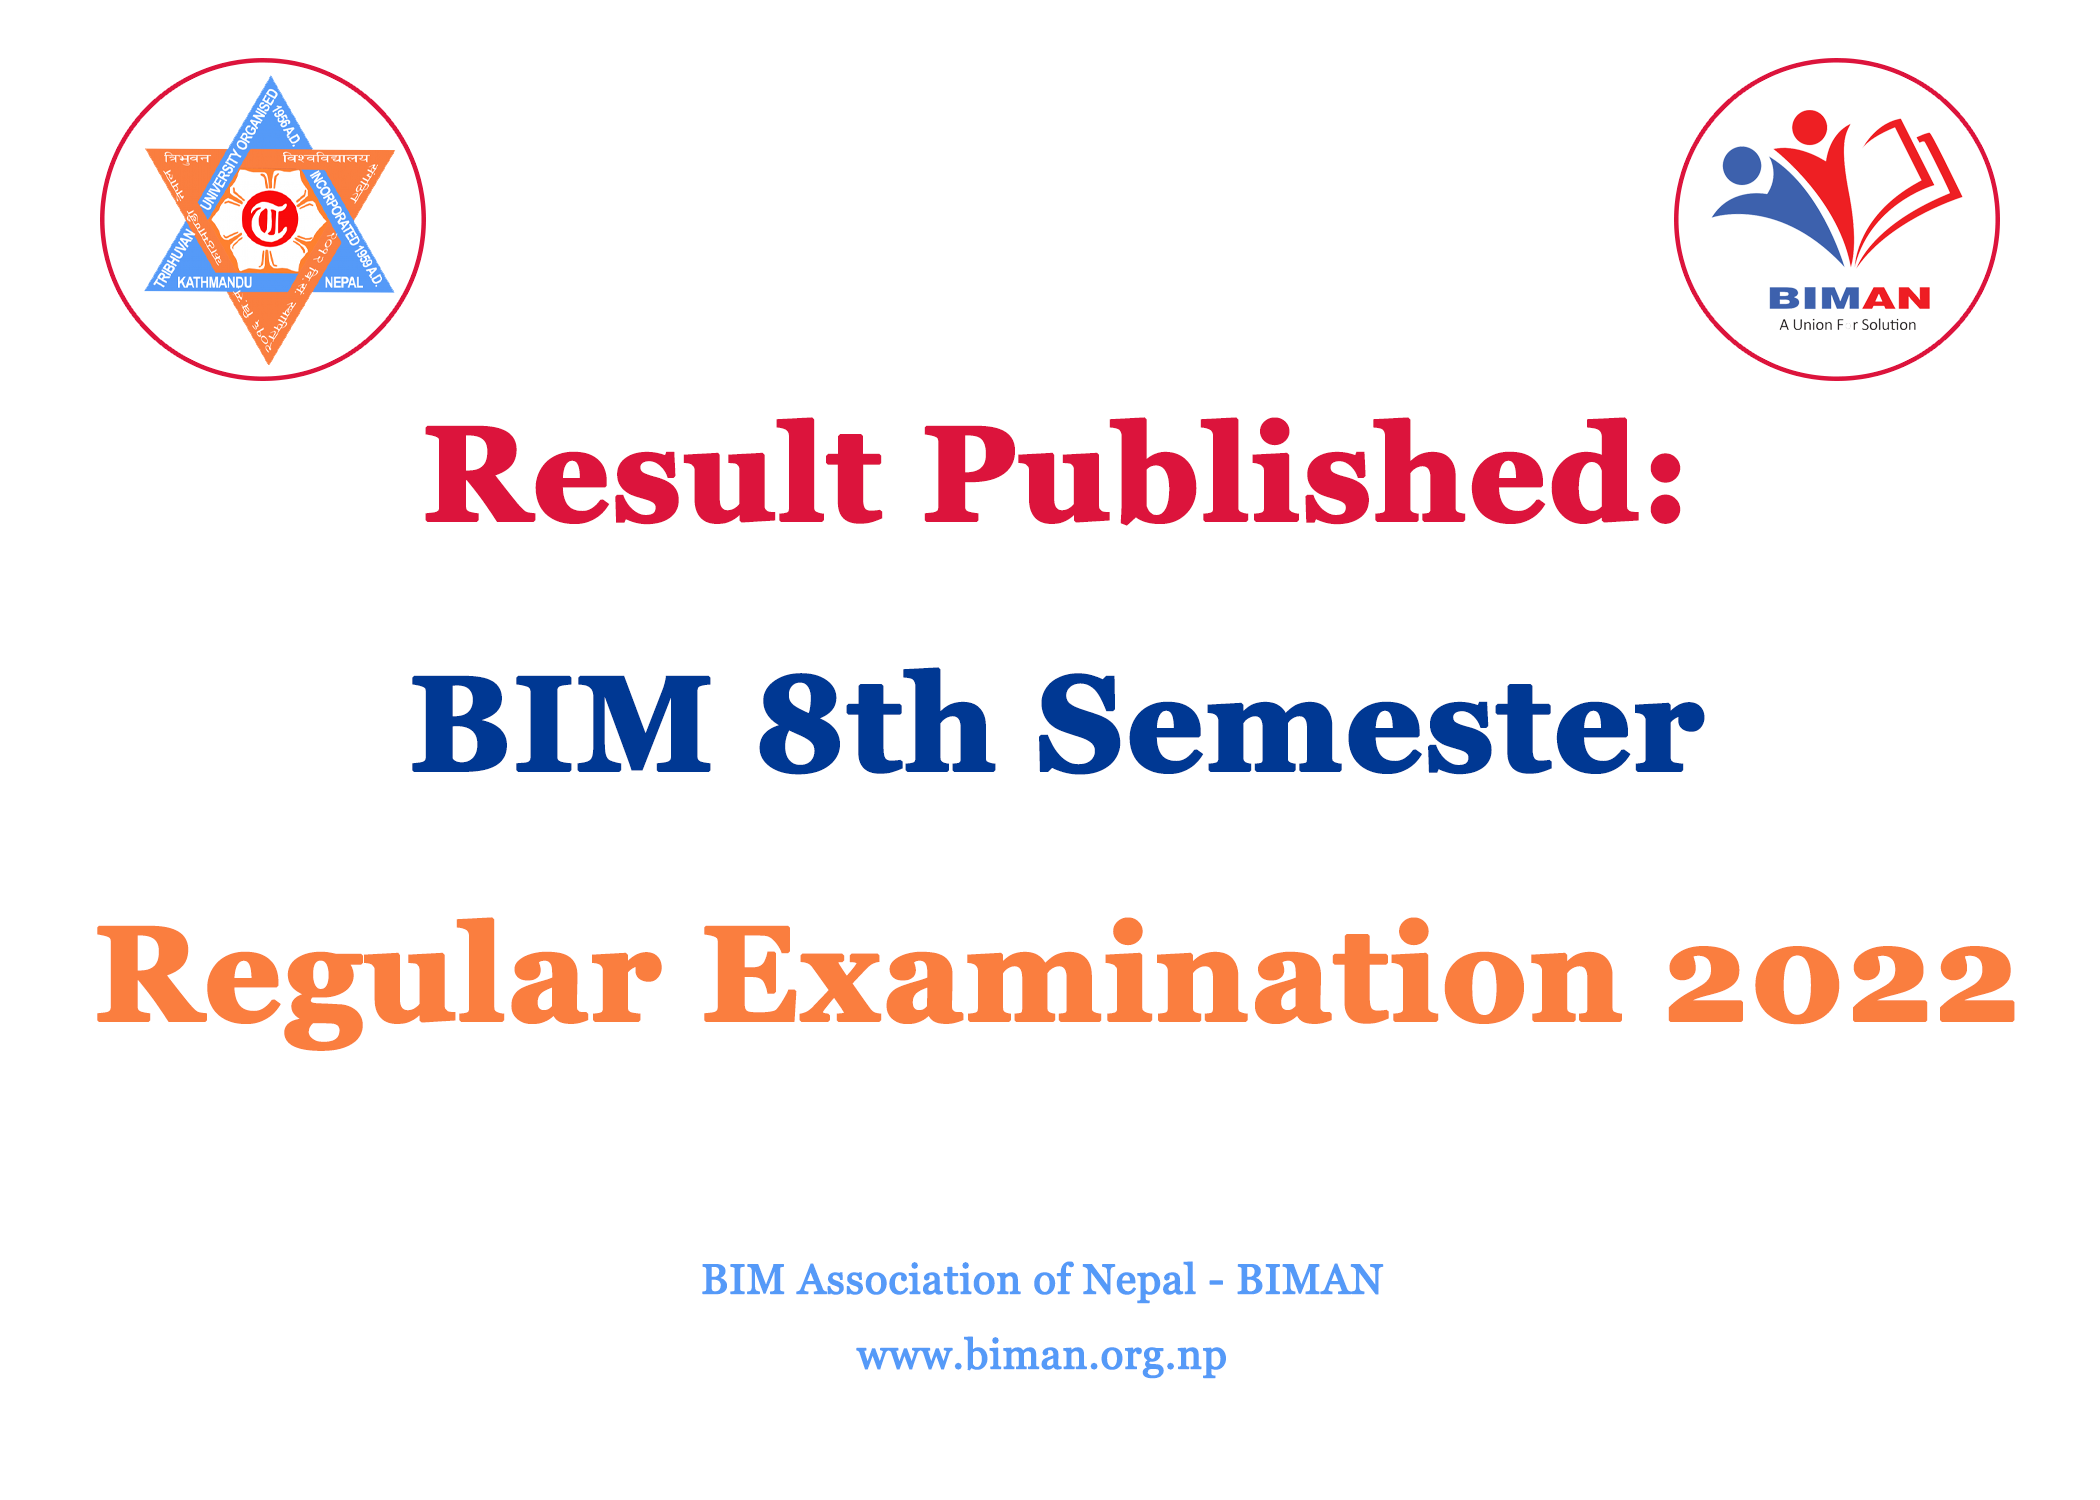 Result Published: BIM 8th Semester Regular Examination 2022